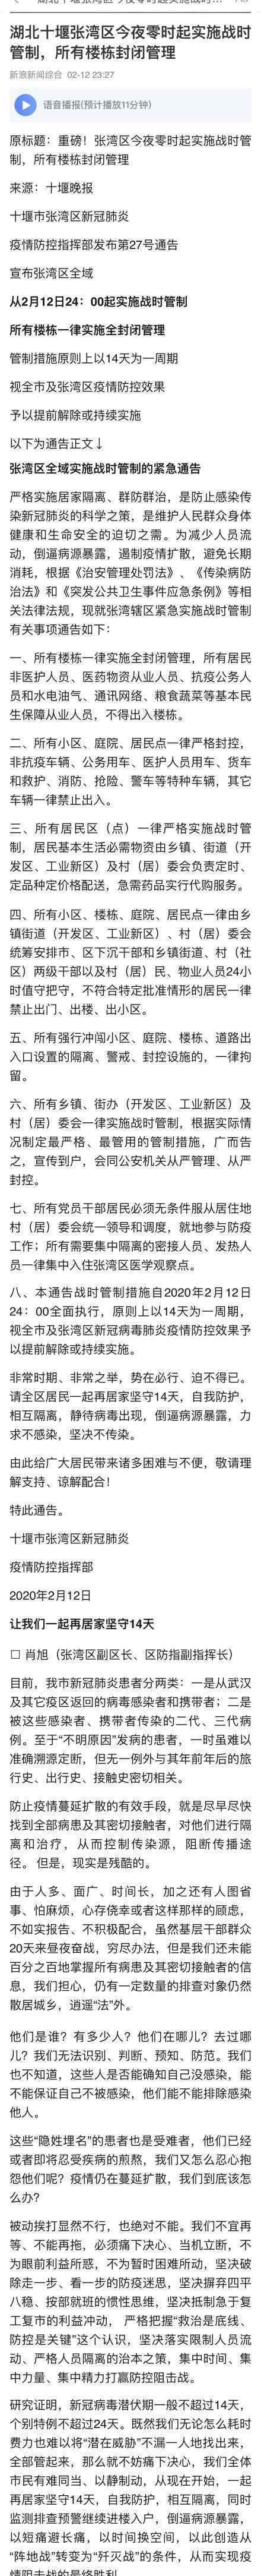 湖北十堰张湾区实施战时管制 具体管制公告内容是